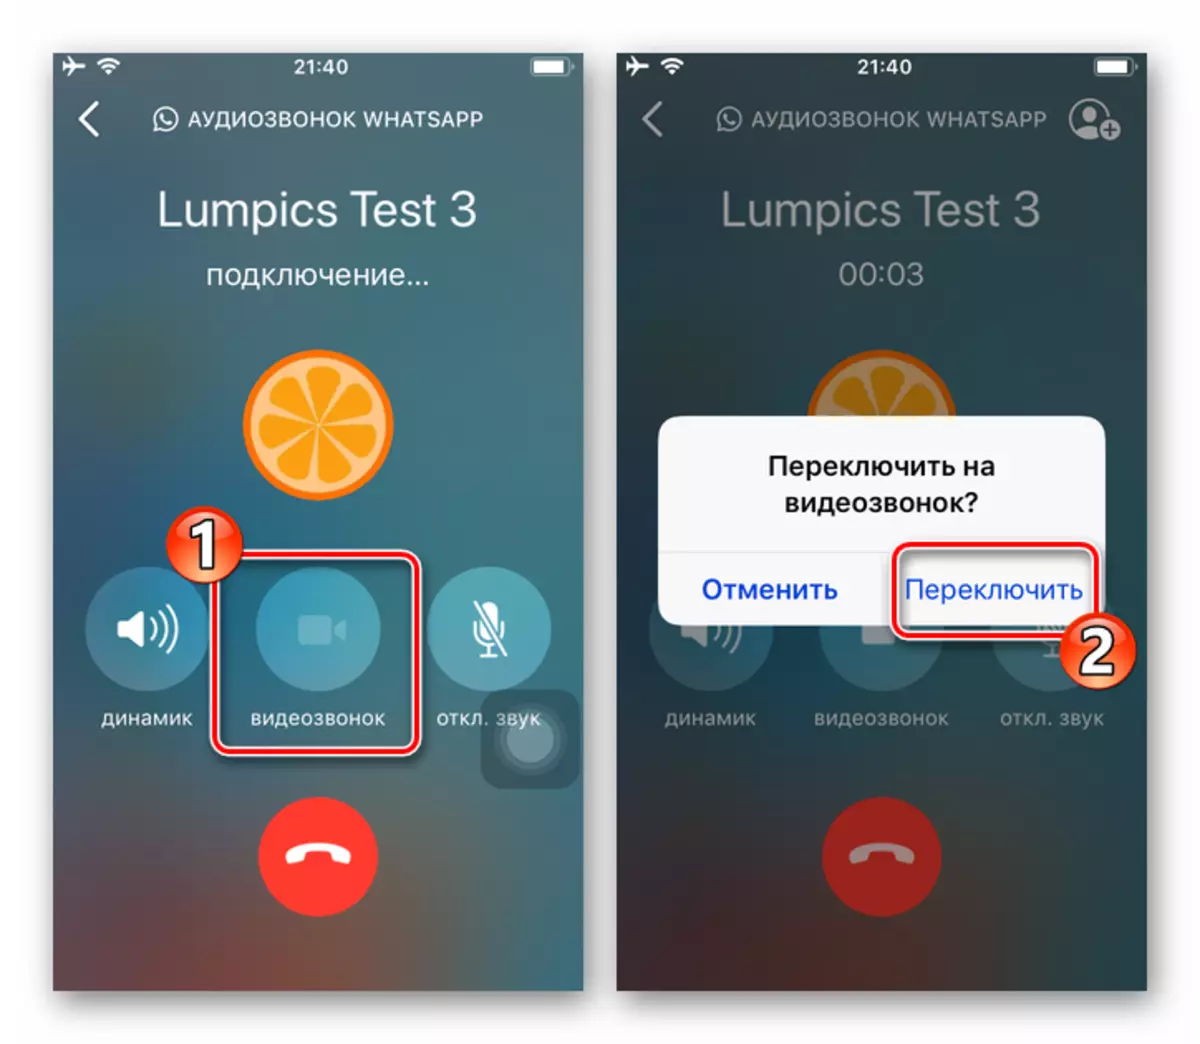 WhatsApp za iOS prebacivanje na video komunikaciju u procesu glasovnog poziva